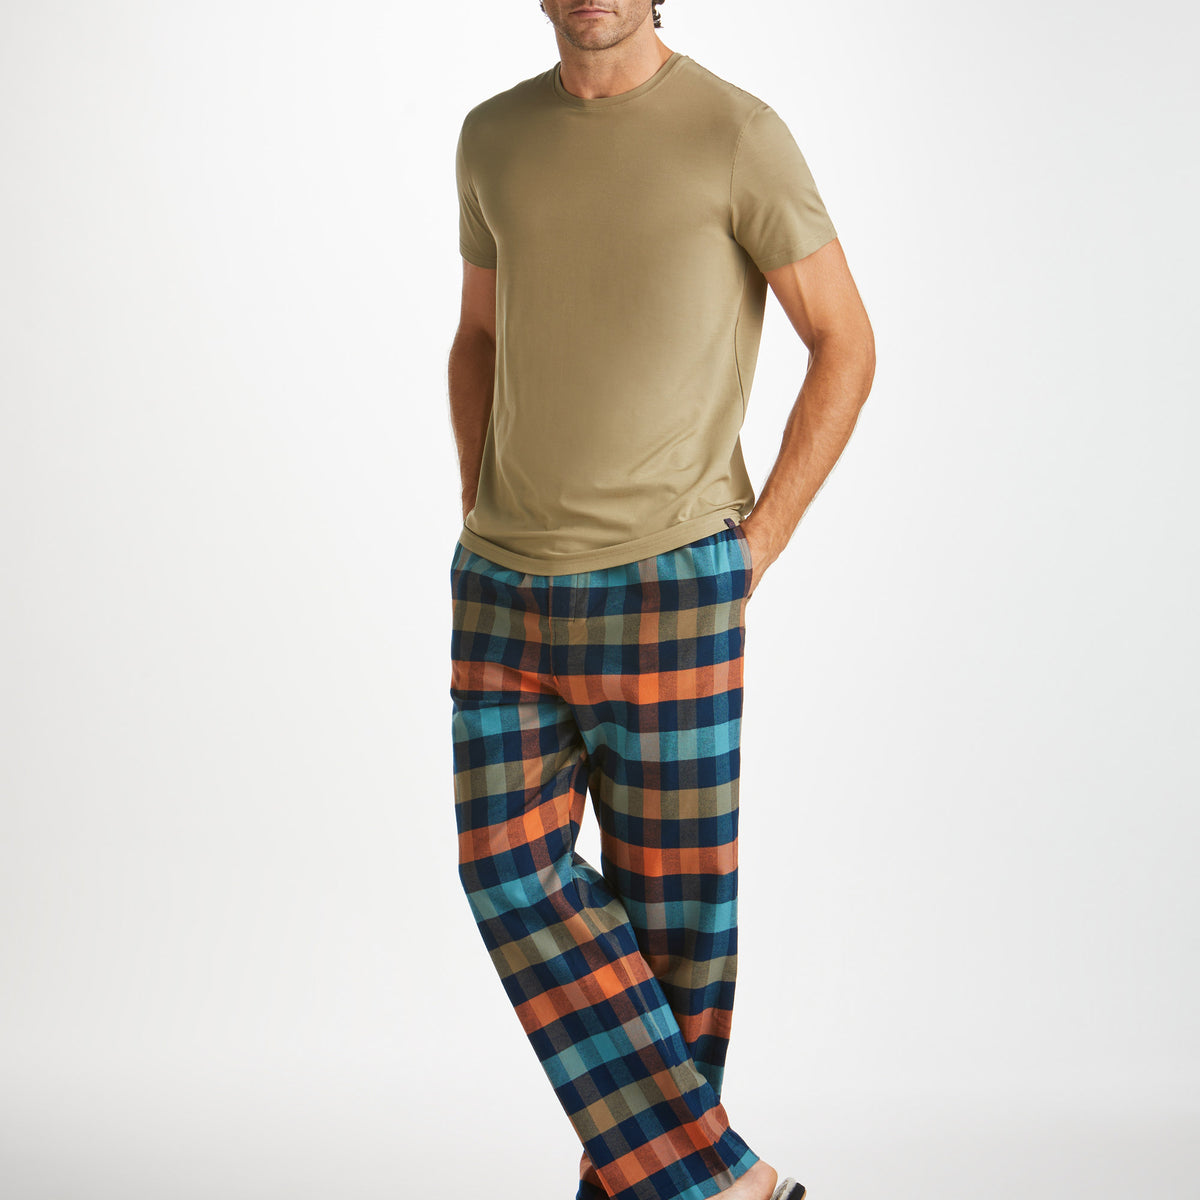 Men's Organic Cotton Drawstring Lounge Pants - S/M, L/XL, 2XL/3XL |  EcoPlanet / EcoChoices